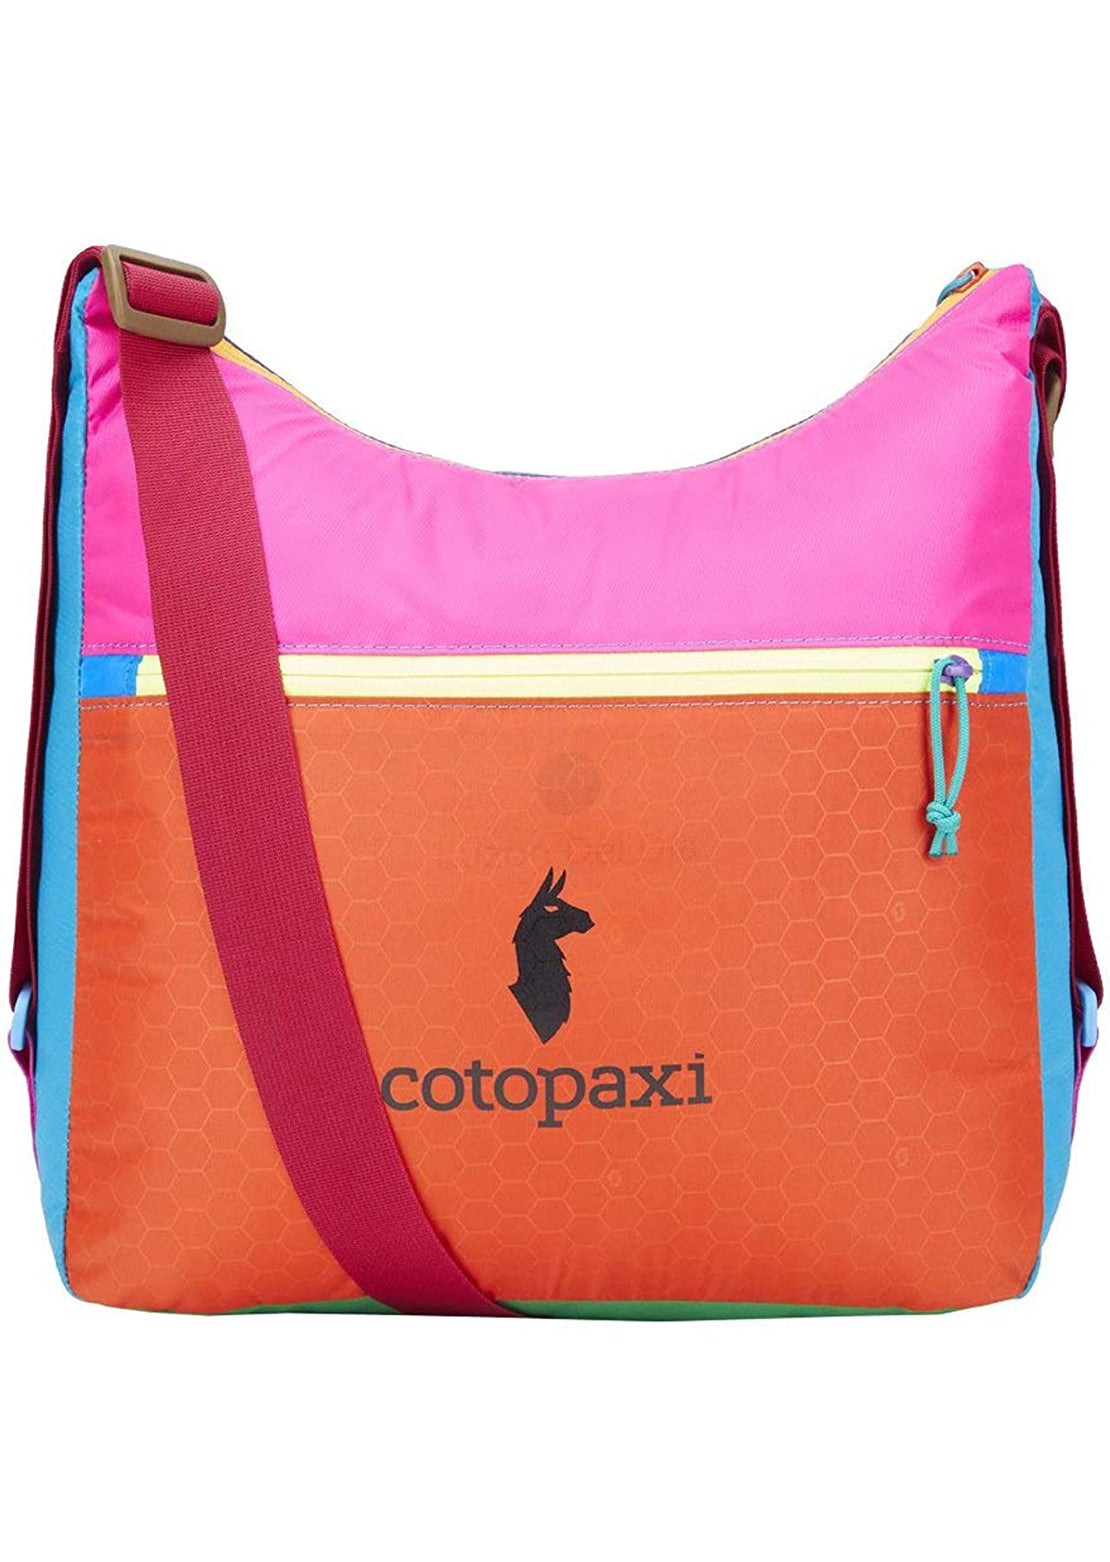 Cotopaxi Taal Convertible Tote Bag Del Dia